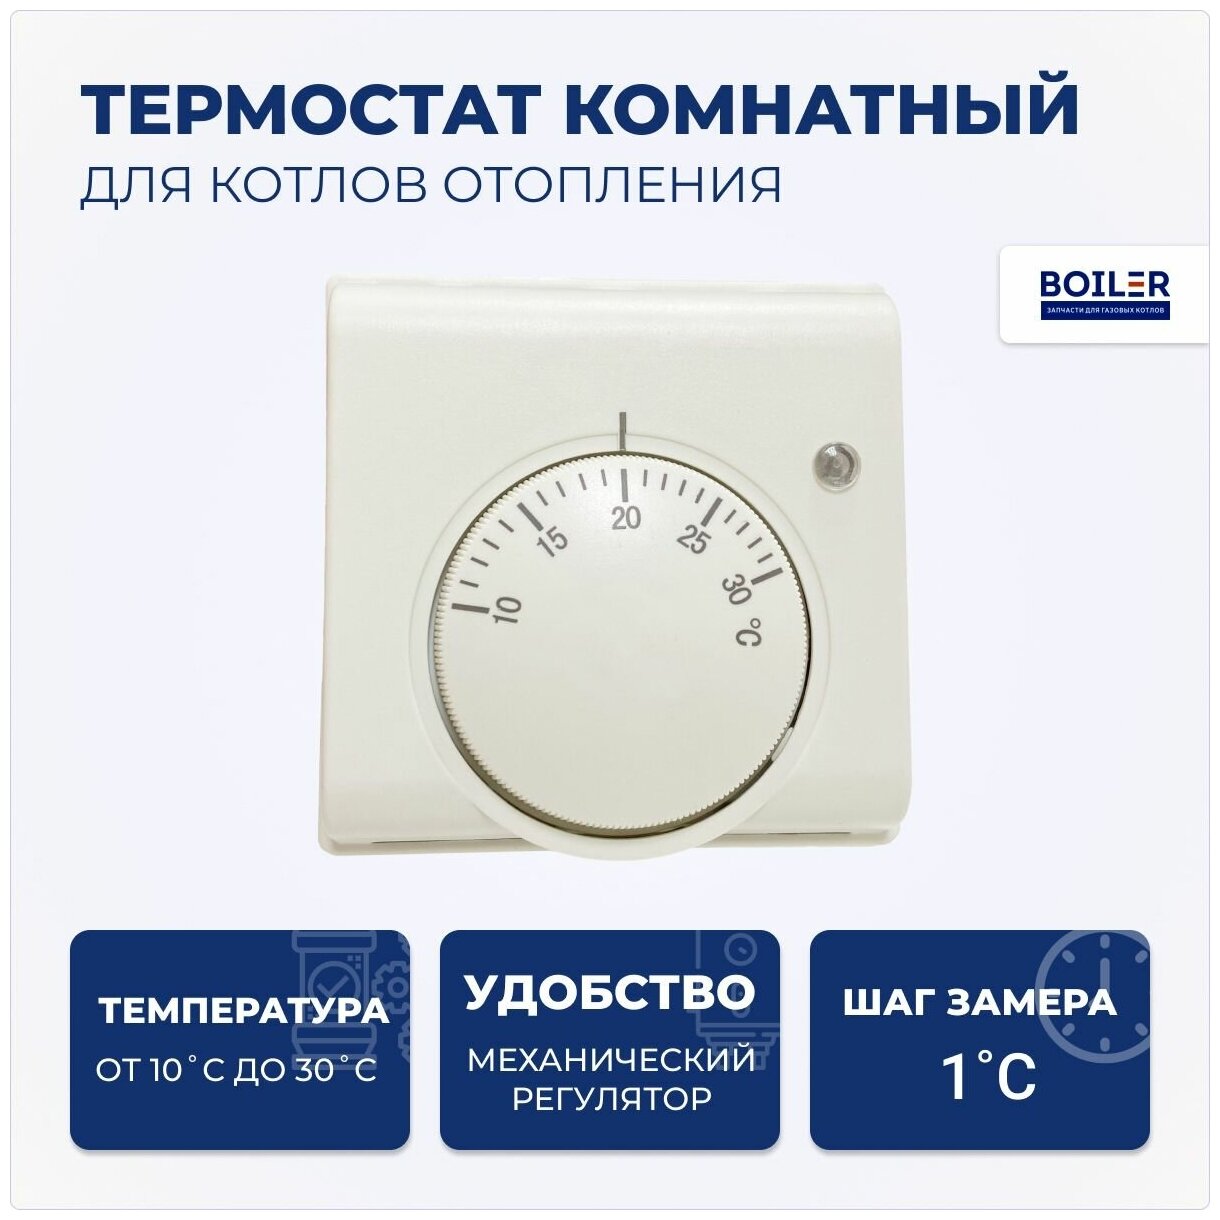 Термостат комнатный / терморегулятор для котла, TK-10